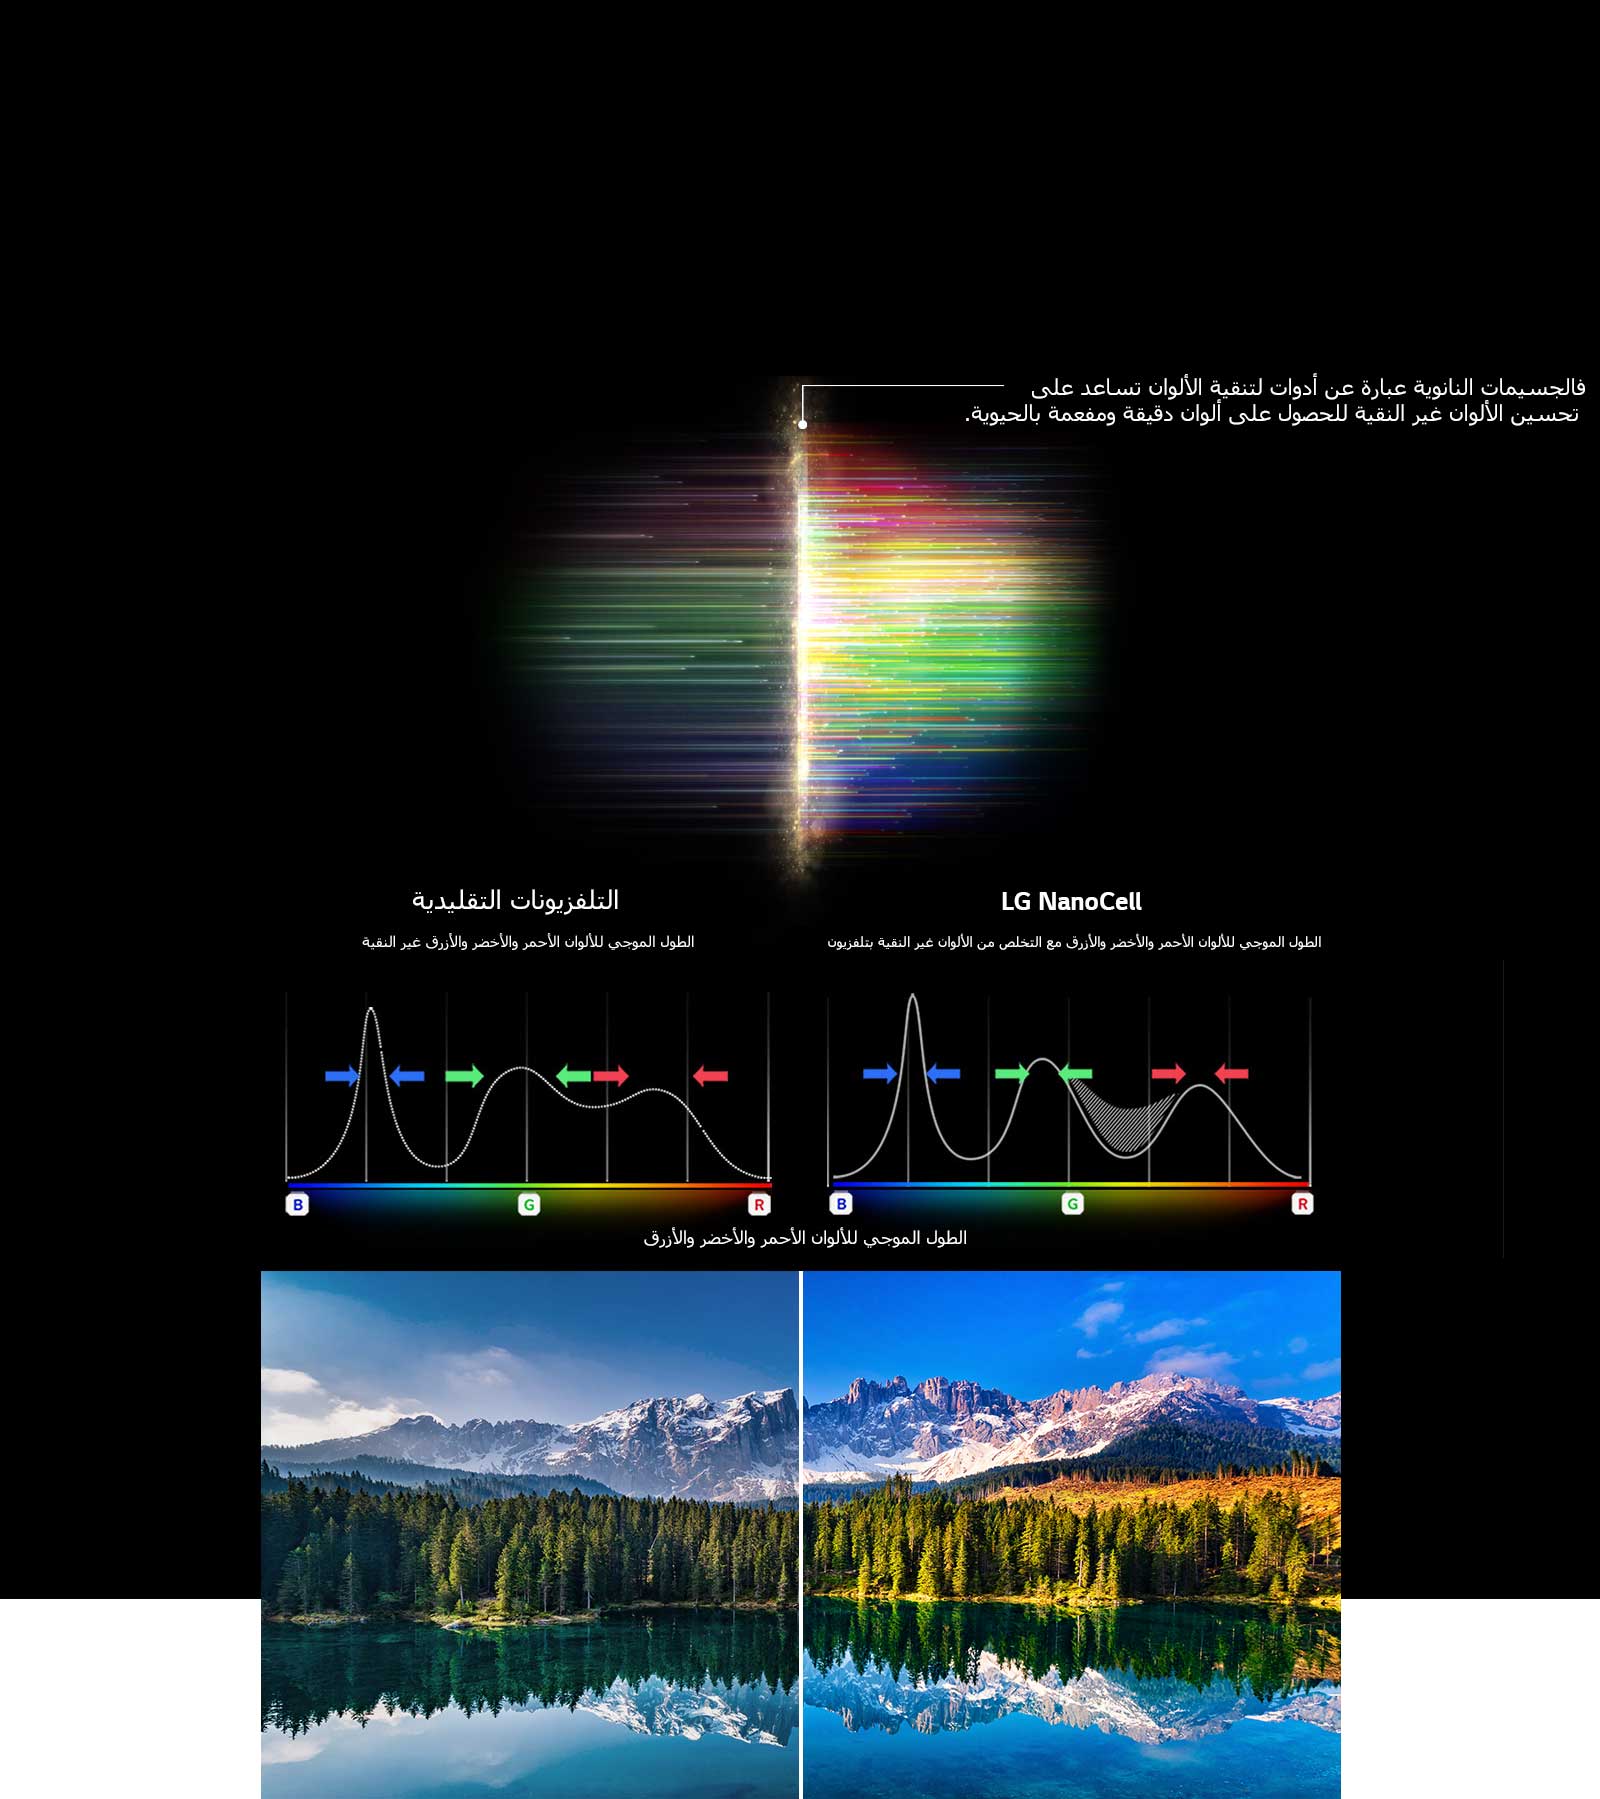 الرسم البياني لطيف الألوان الأحمر والأخضر والأزرق الذي يرشح الصور والألوان الباهتة مع مقارنة نقاء الألوان الذي توفره التلفزيونات التقليدية وتلفزيونات NanoCell